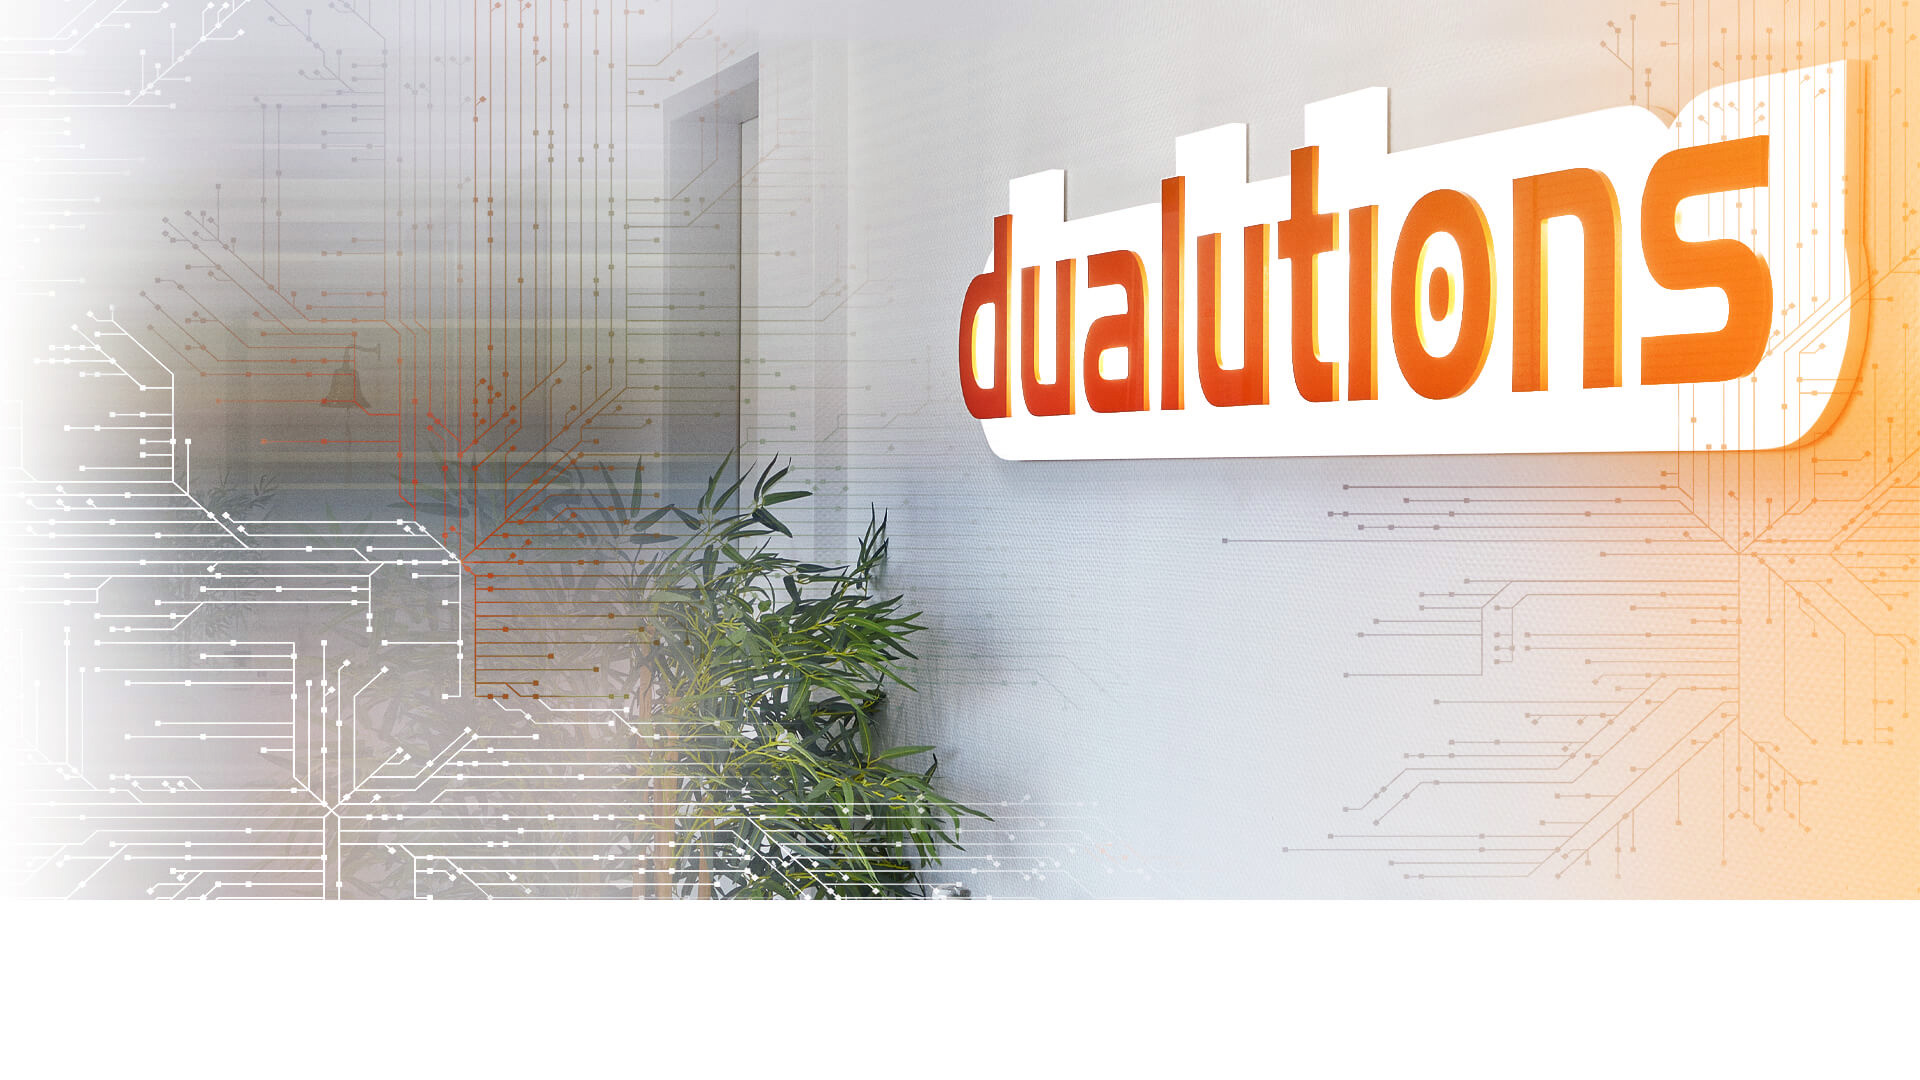 dualutions zeichnet sich durch über 400 Jahre IT-Erfahrung und zahlreiche Auszeichnungen aus.